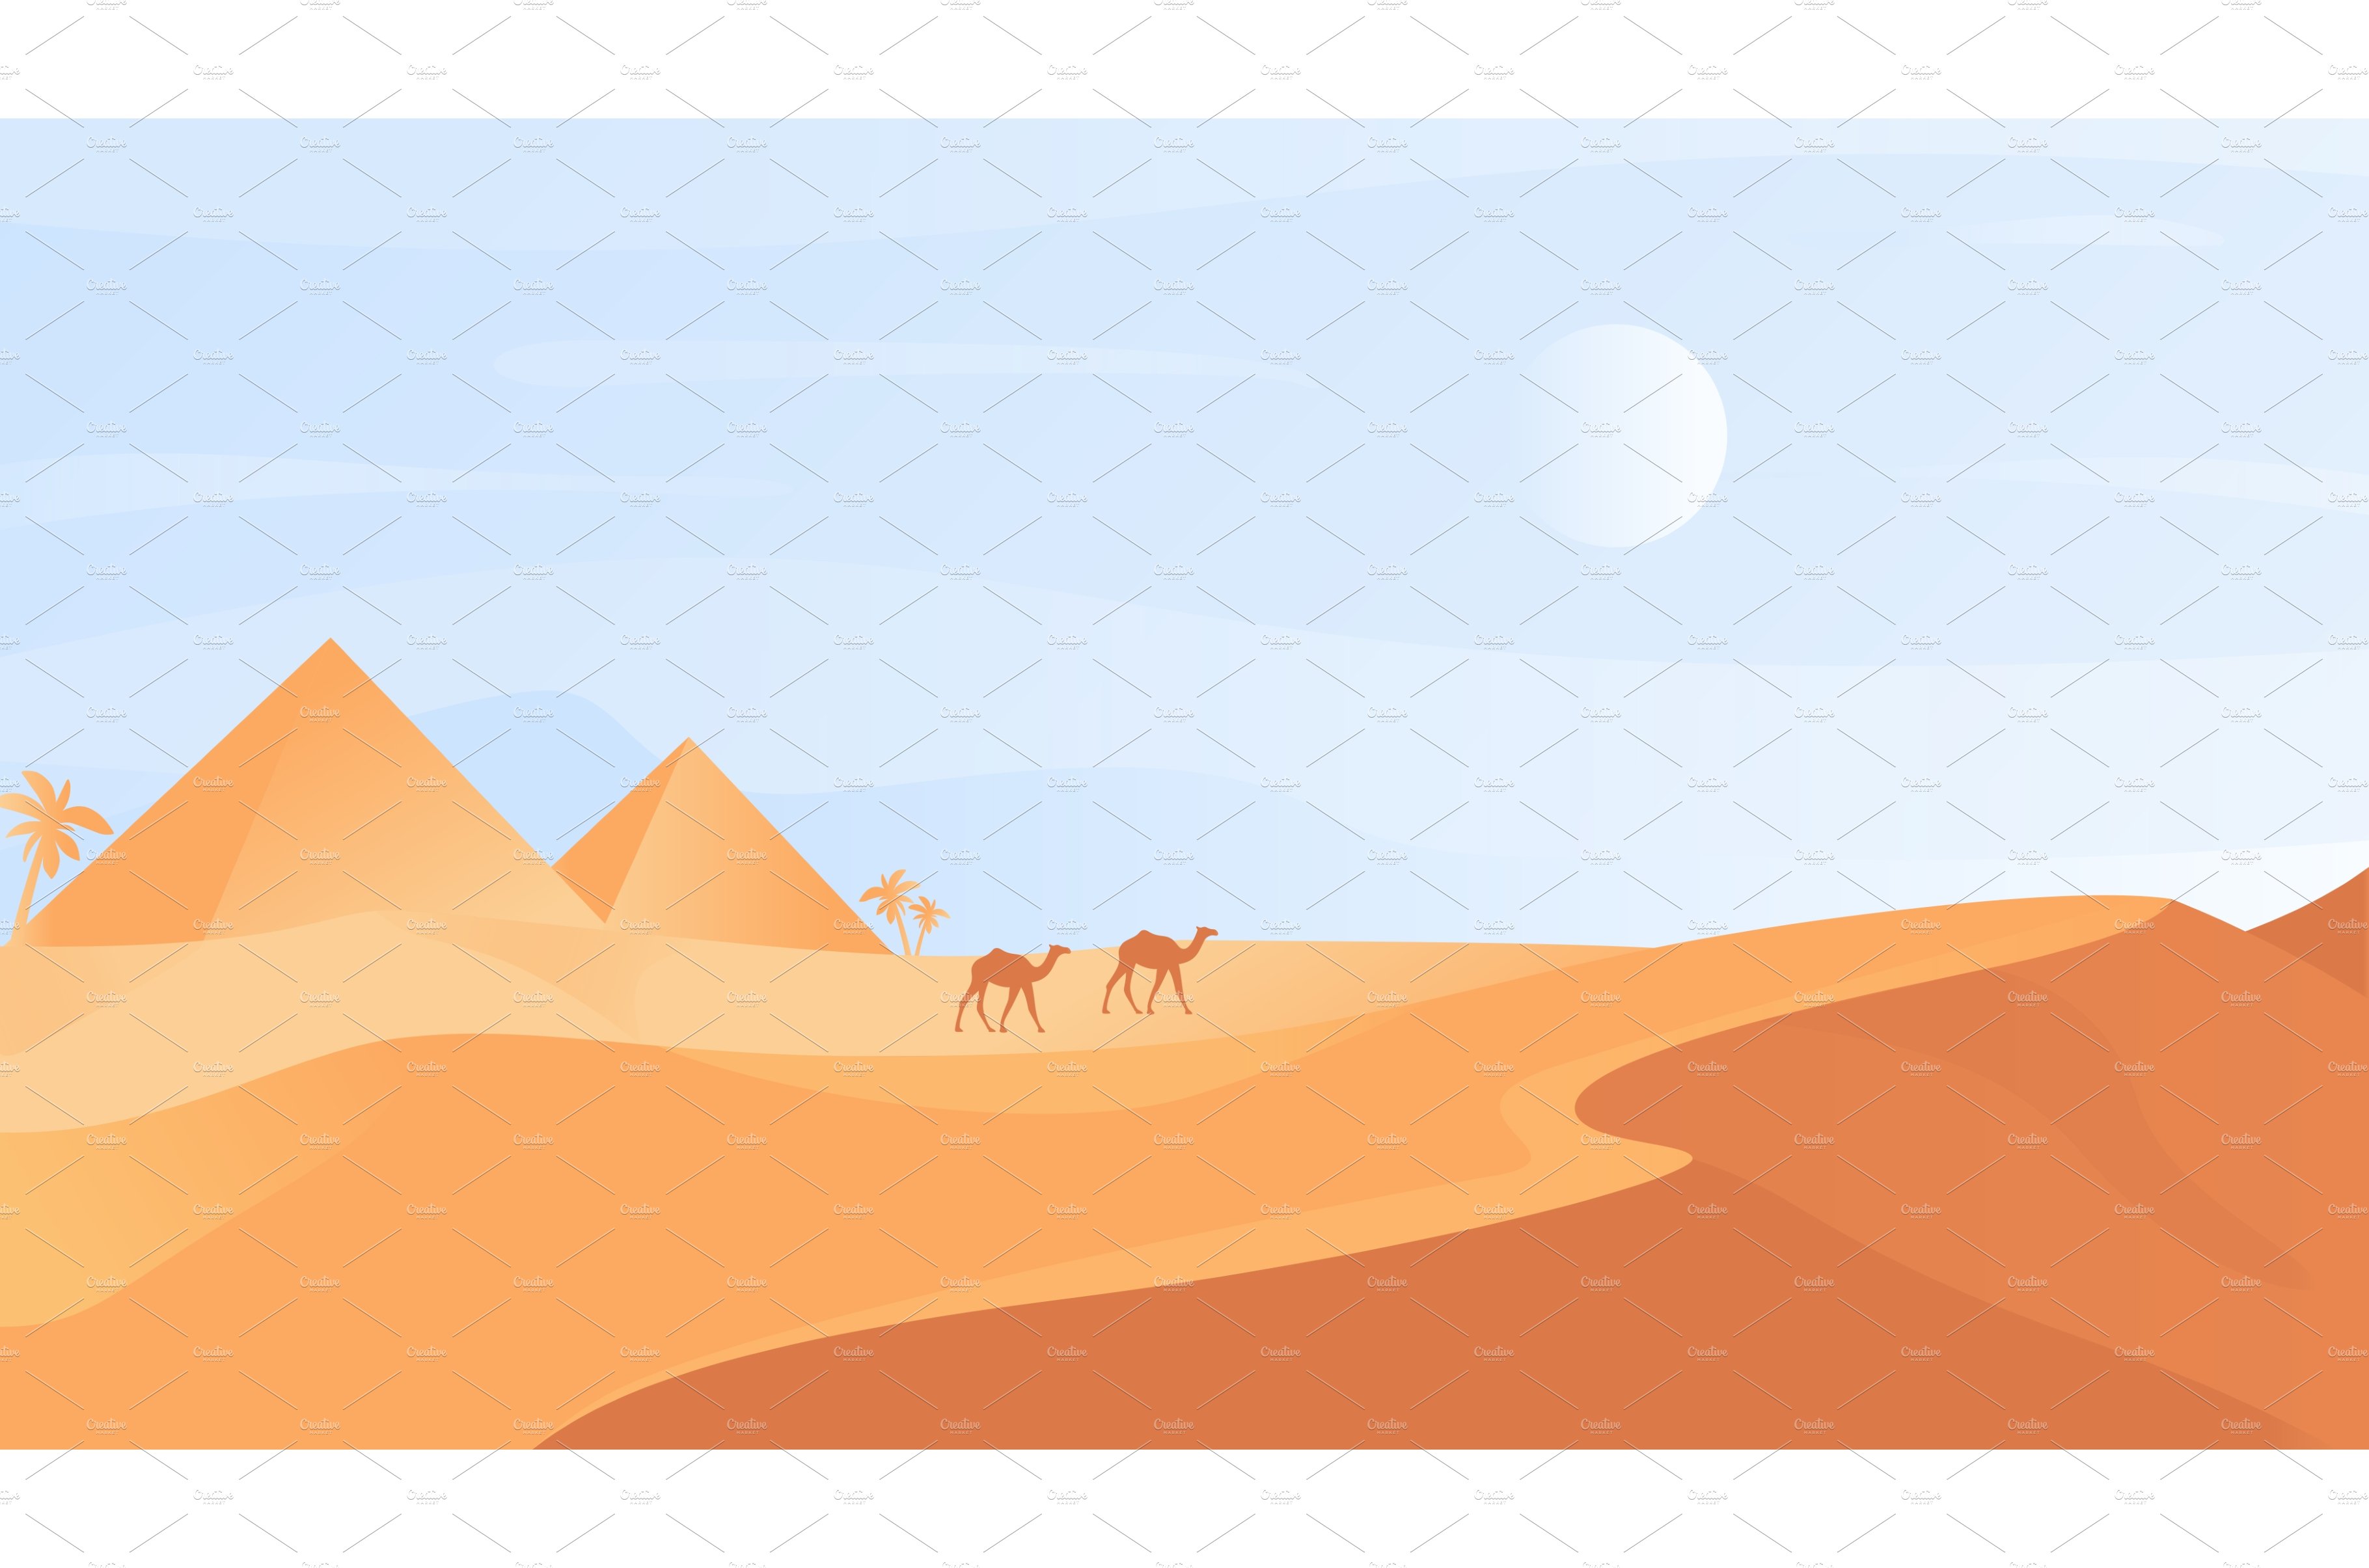 Egyptian desert nature landscape cover image.